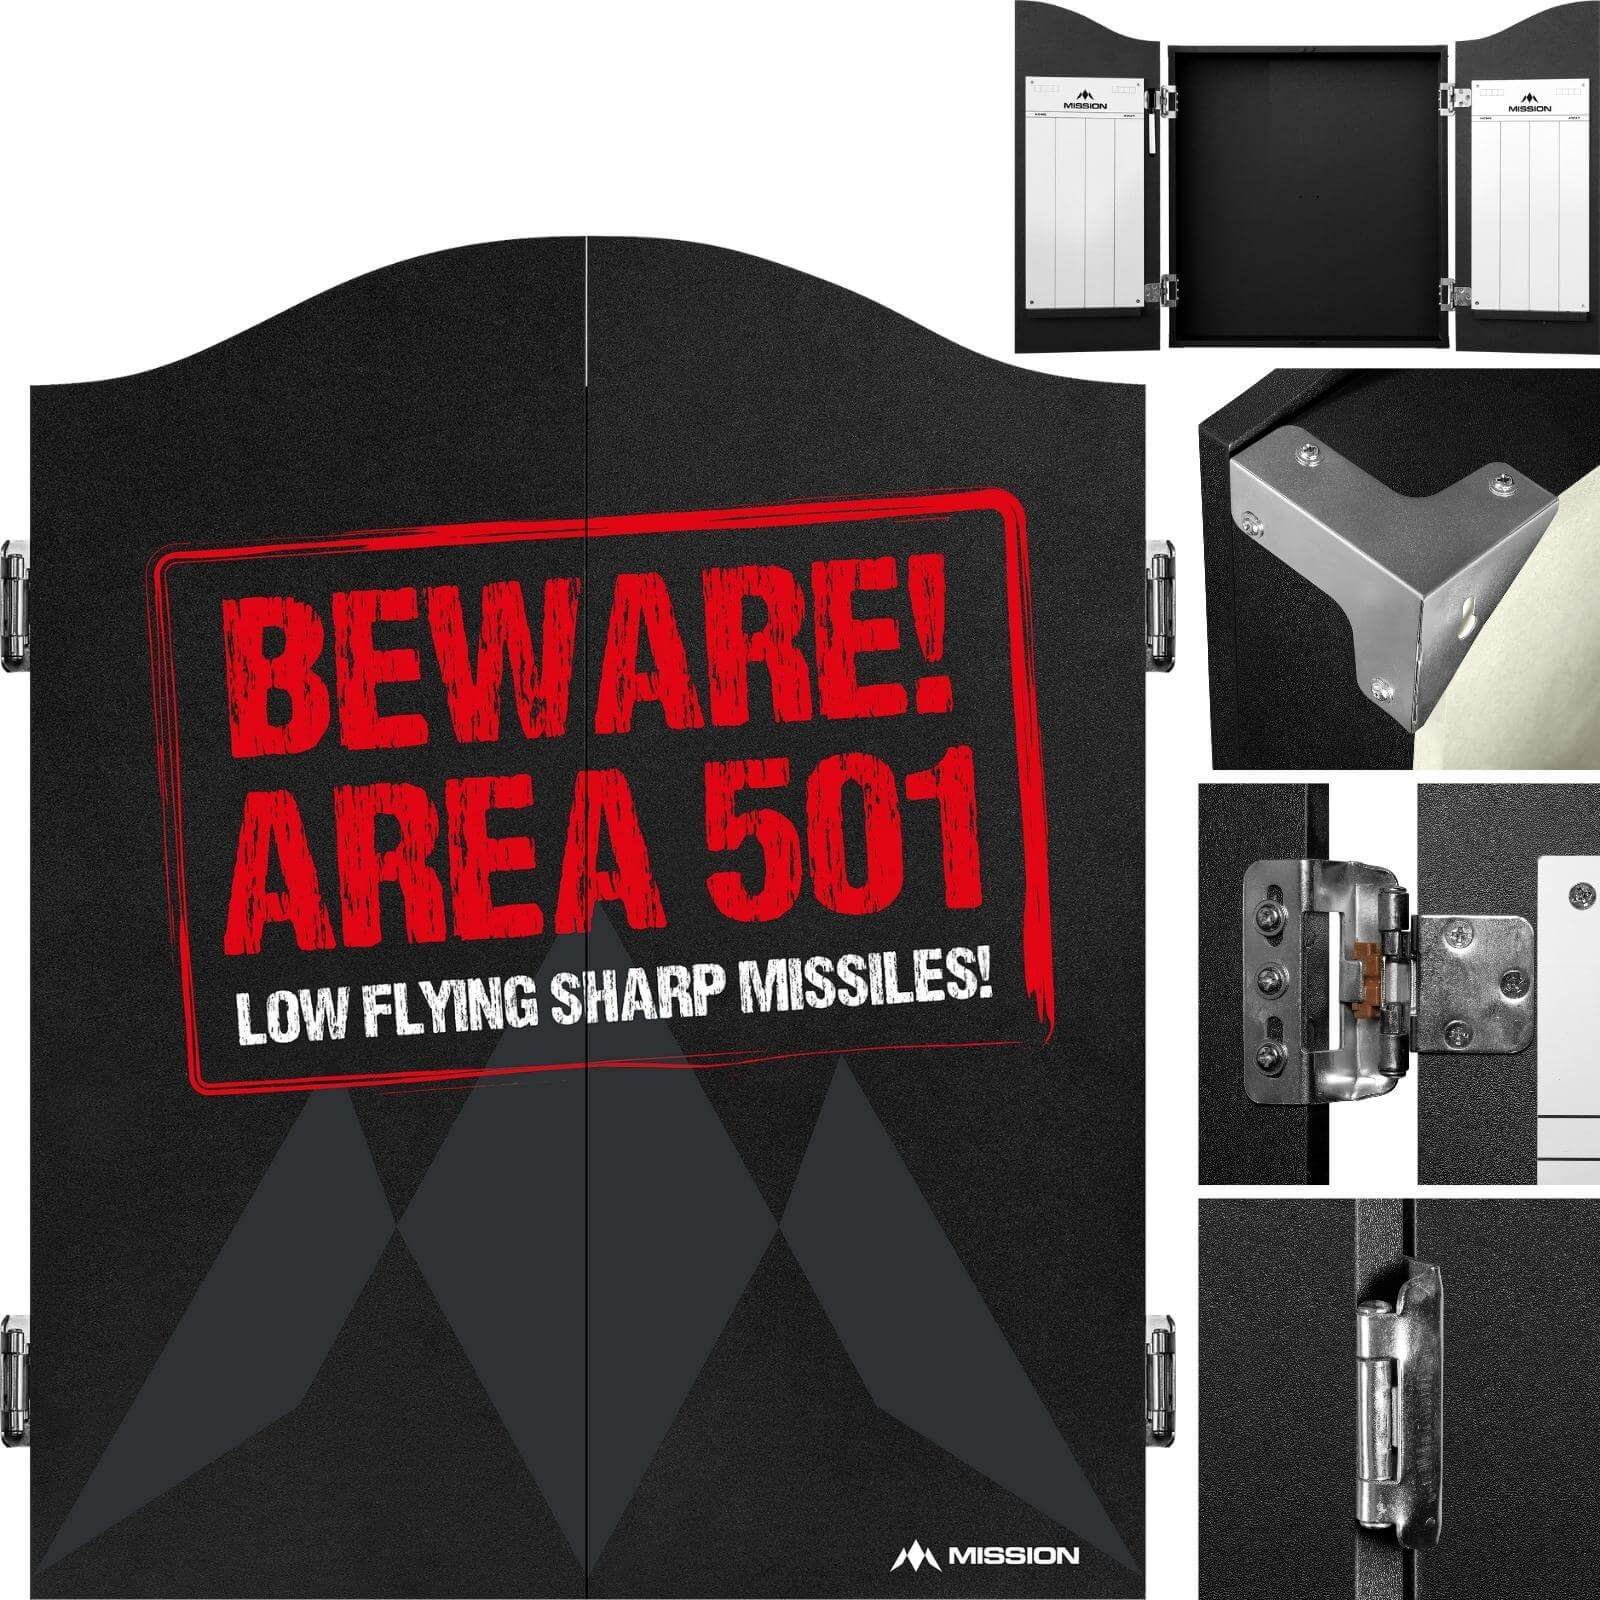 Dartboard Accessories - Mission - Dartboard Cabinet - Deluxe Quality - Area 501 - Beware 